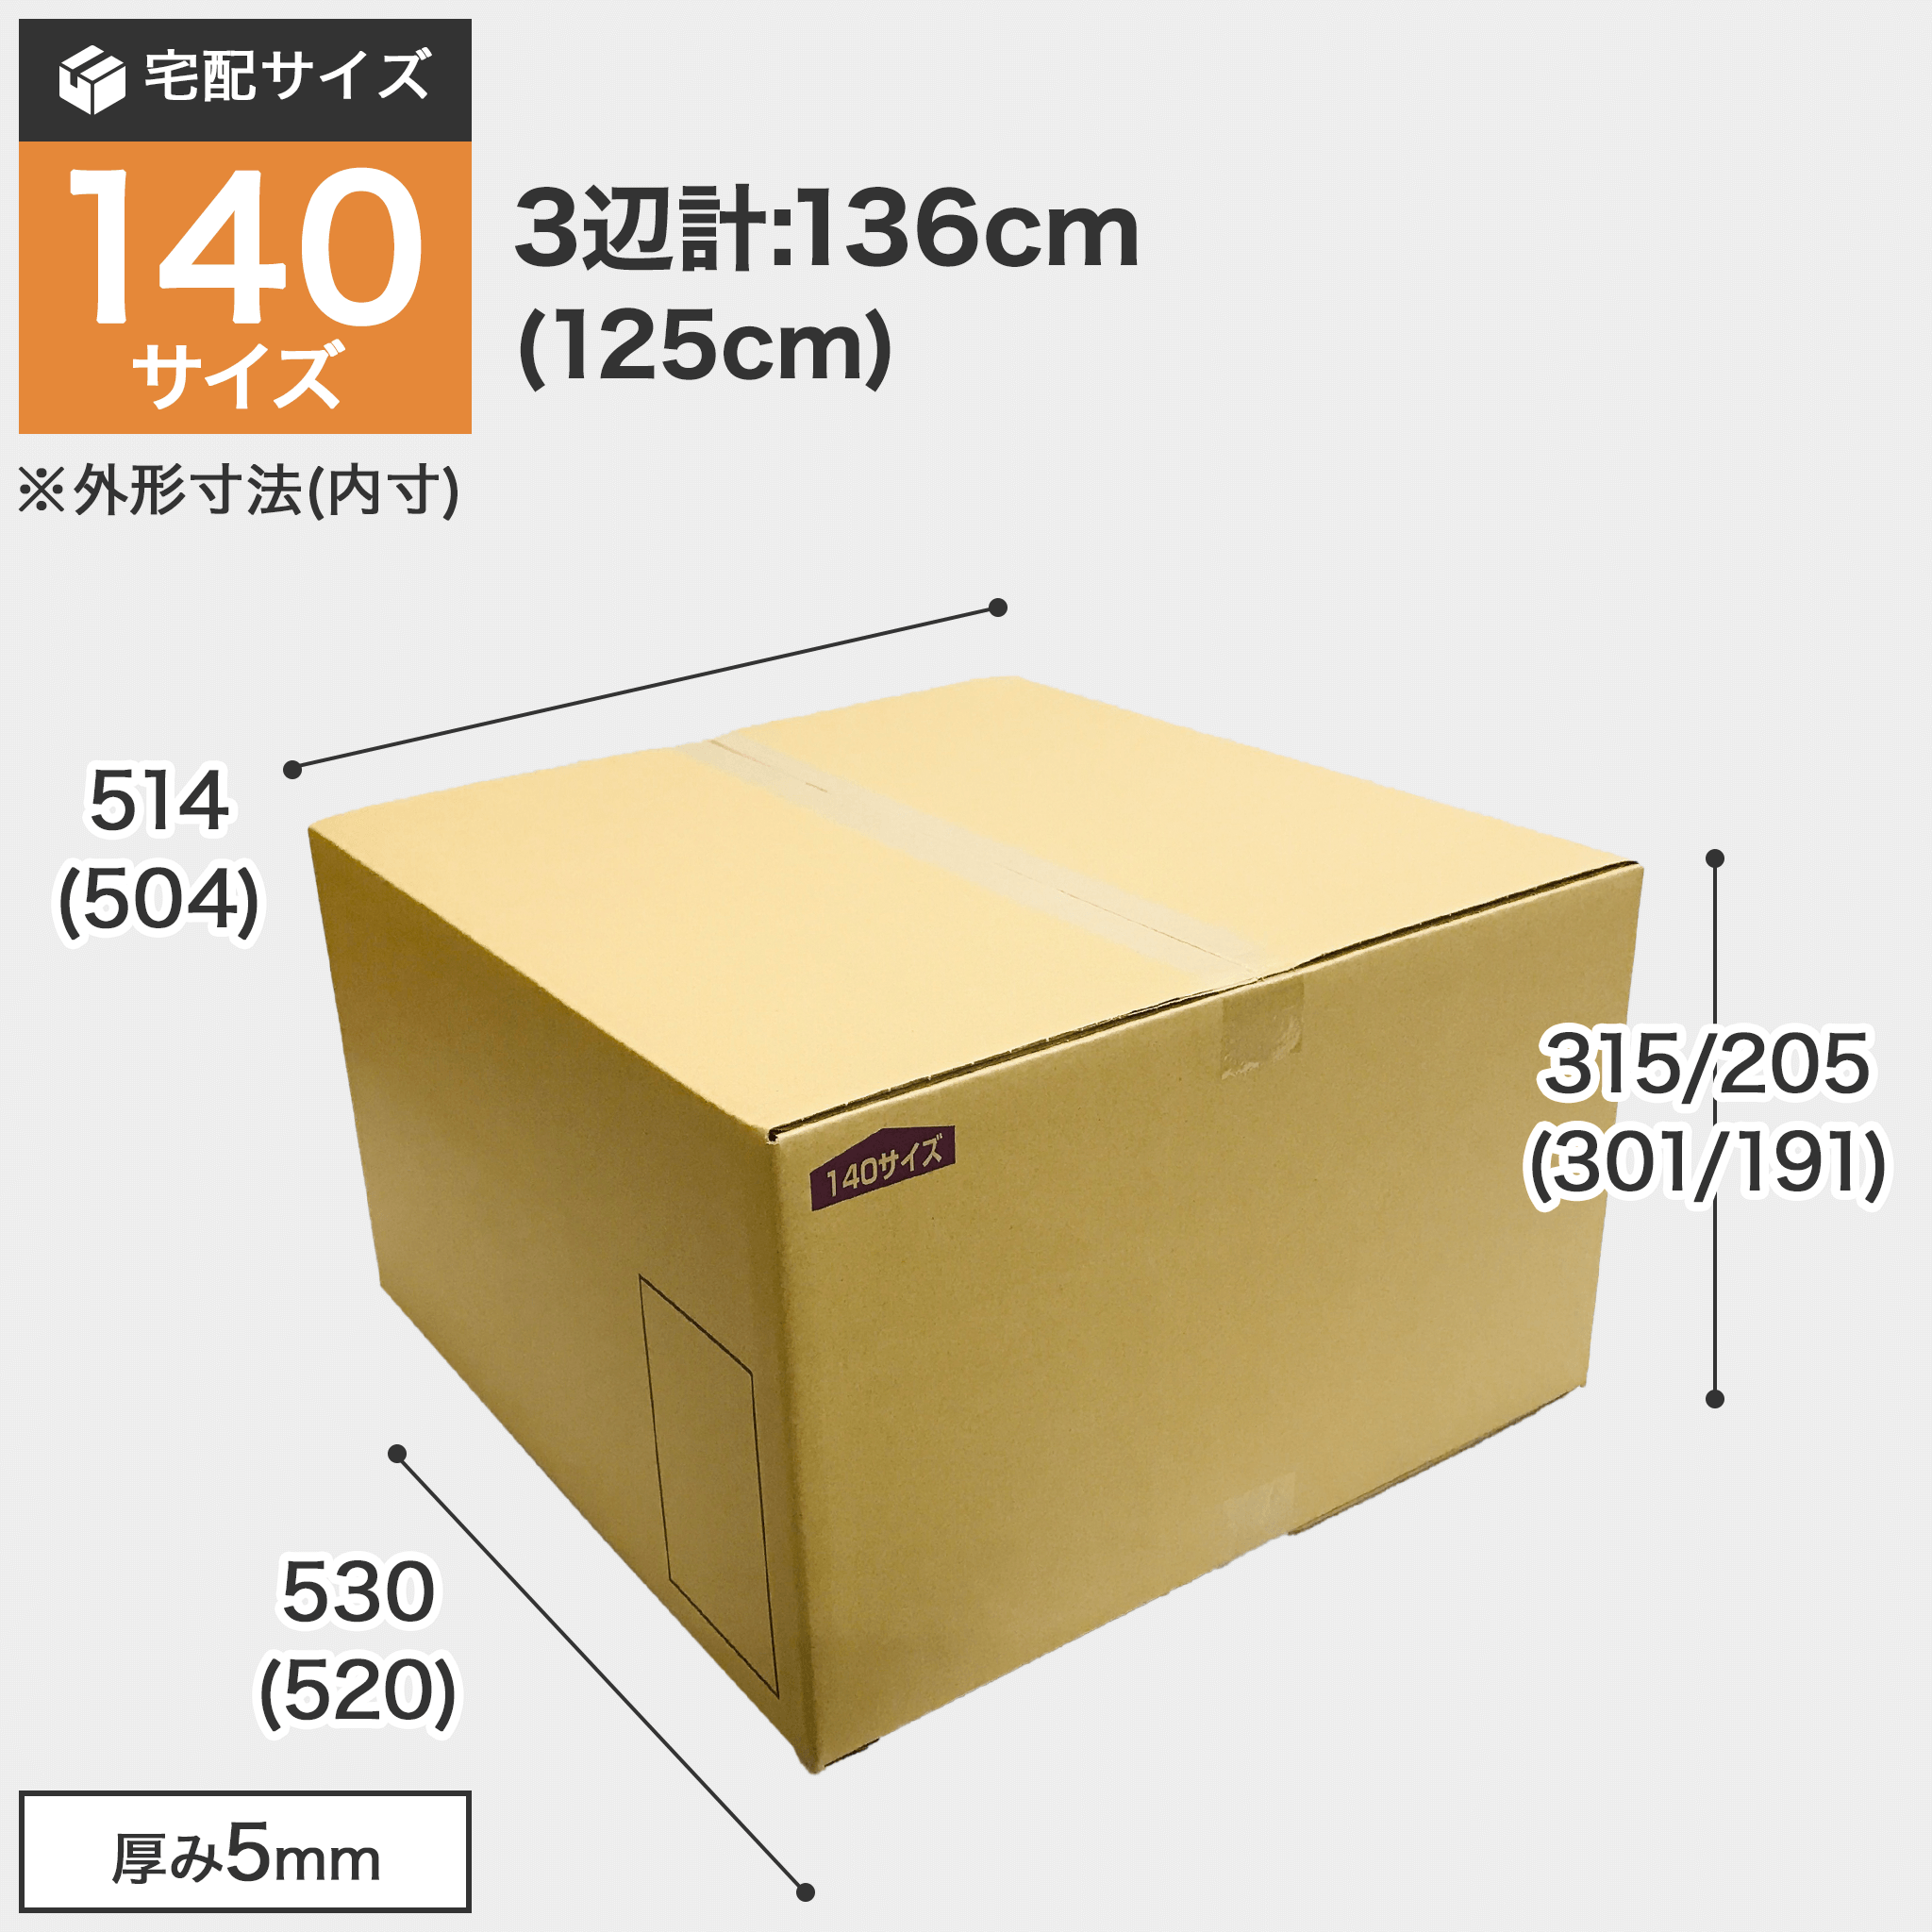 宅配140サイズのダンボール箱 3辺合計約136cm 罫線まで裁ち下げると3辺合計125cmになります。